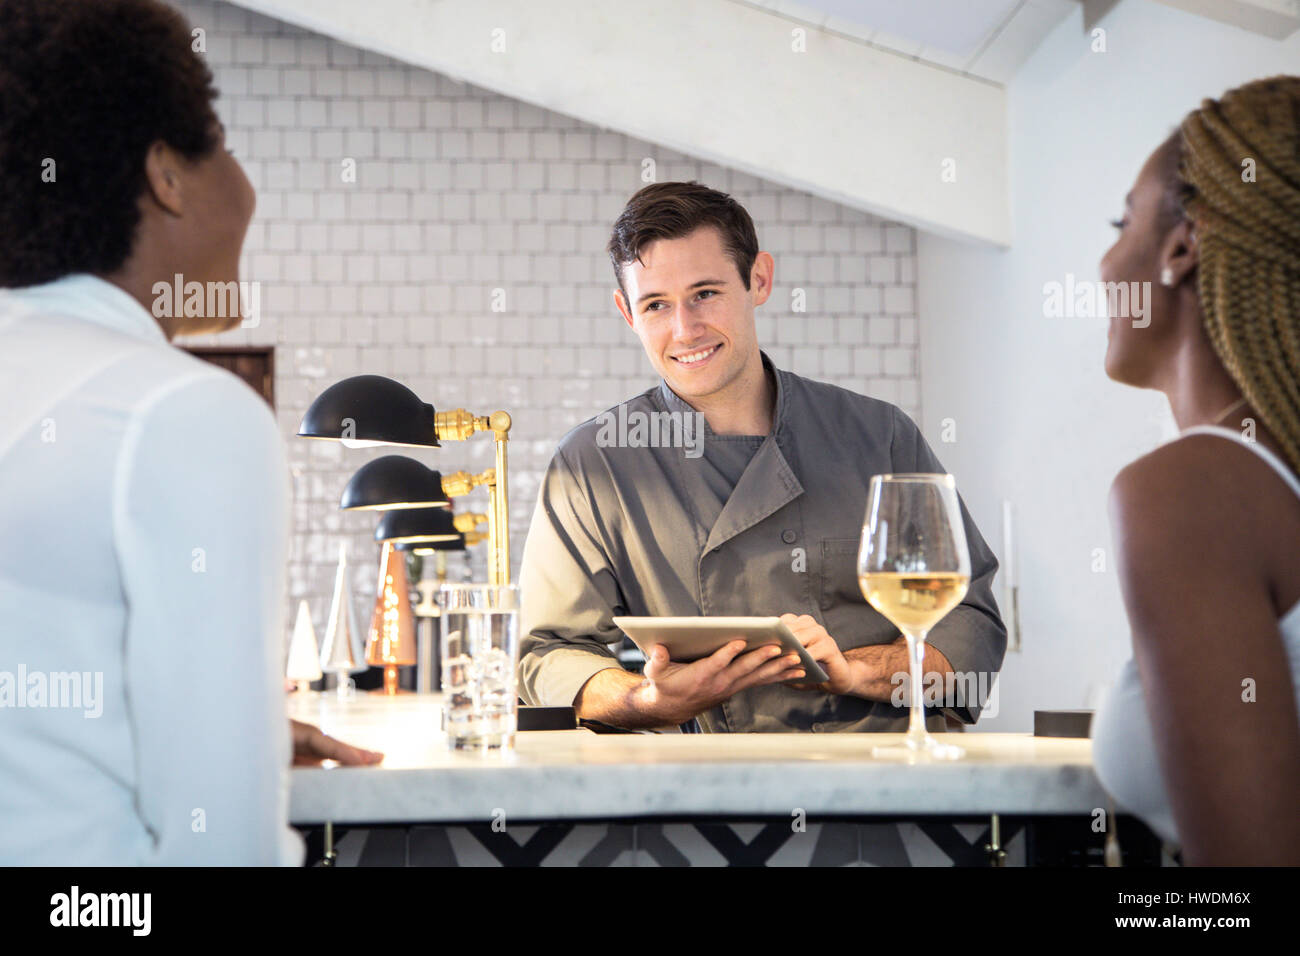 Barman serving customers at bar, barman using digital tablet Stock Photo